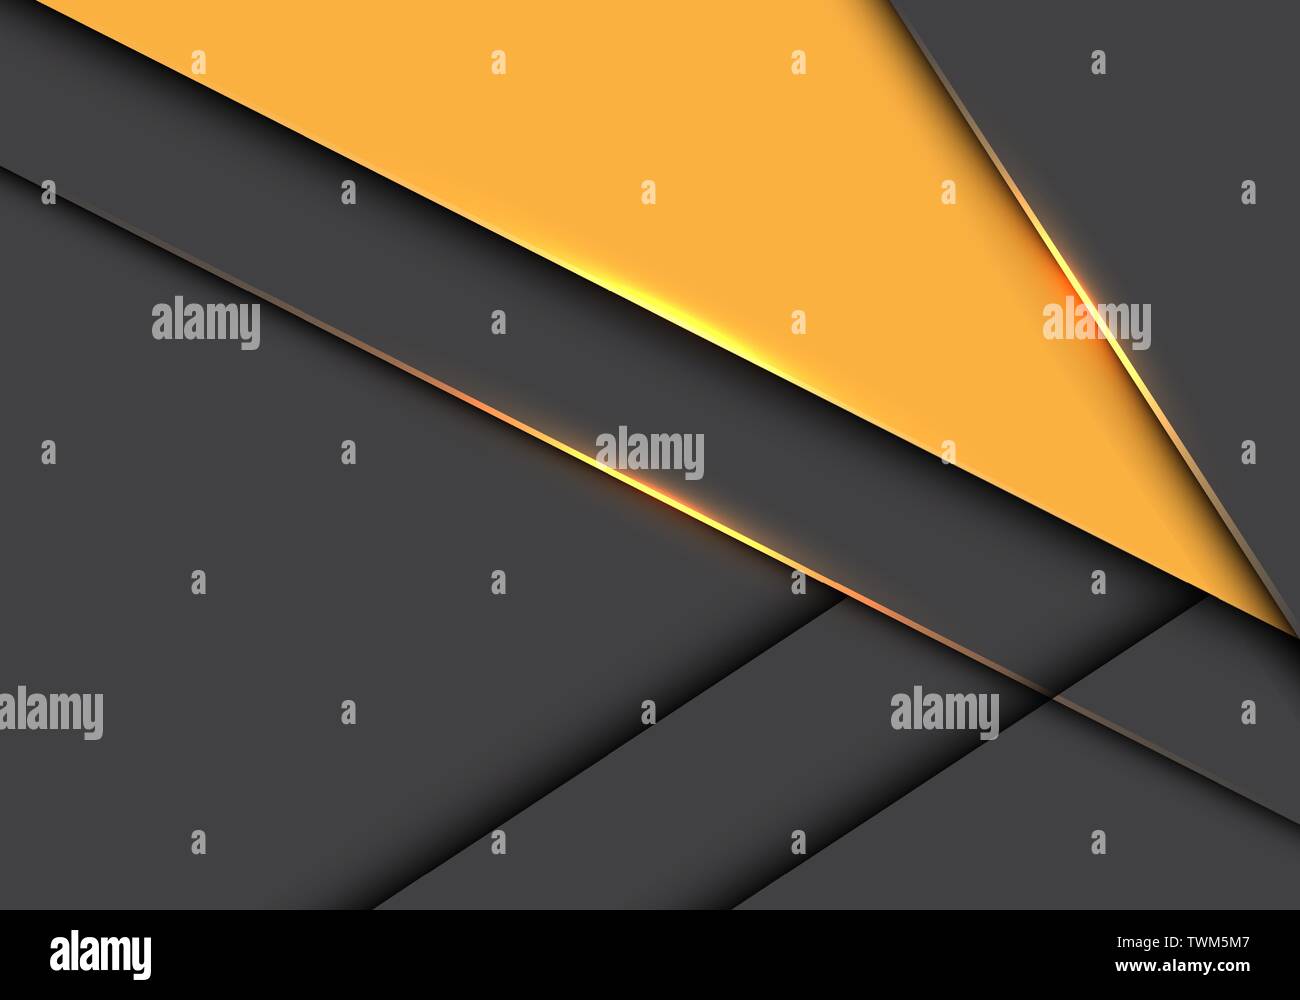 Résumé triangle jaune sur le chevauchement gris métallique moderne design futuristic background vector illustration. Illustration de Vecteur